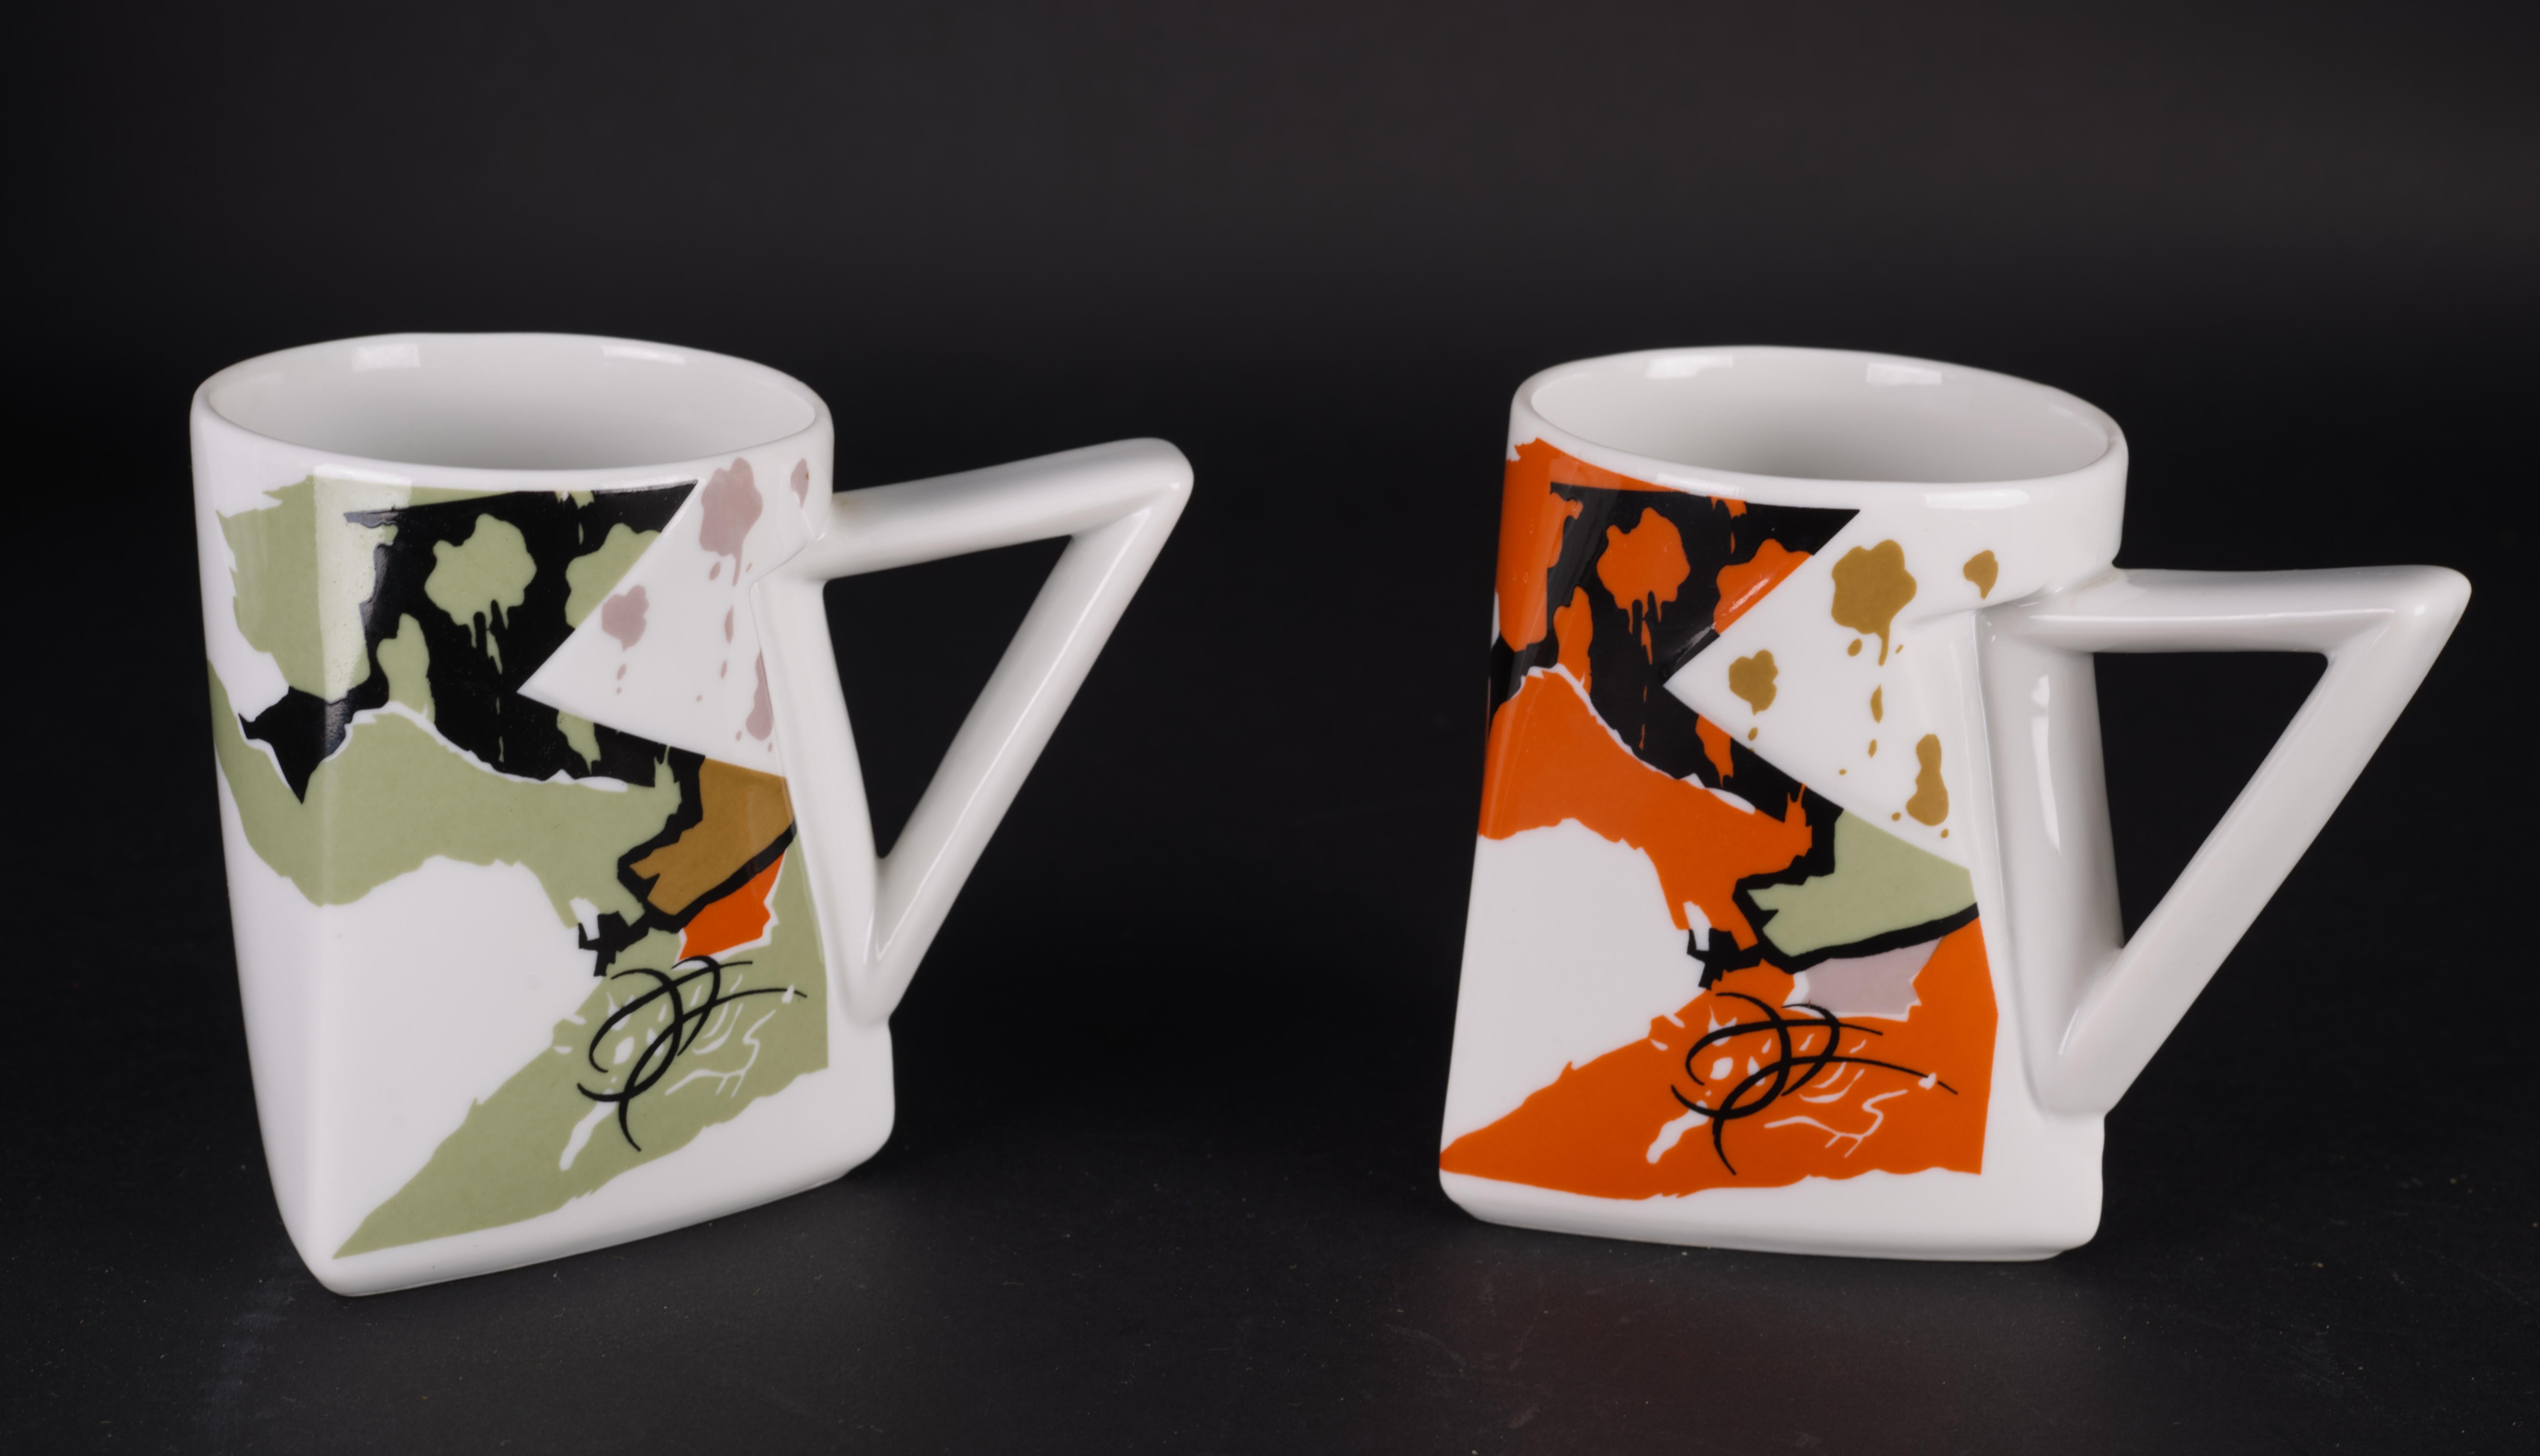 
Das Tassenpaar mit dem Muster Twilight wurde in den 1980er Jahren von Kaneaki Fujimori für Kato Kogei Japan entworfen. Die Tassen sind mit farbenfrohen Motiven in Schwarz, Oliv und Orange verziert, die eindeutig vom Stil Memphis Milanos beeinflusst